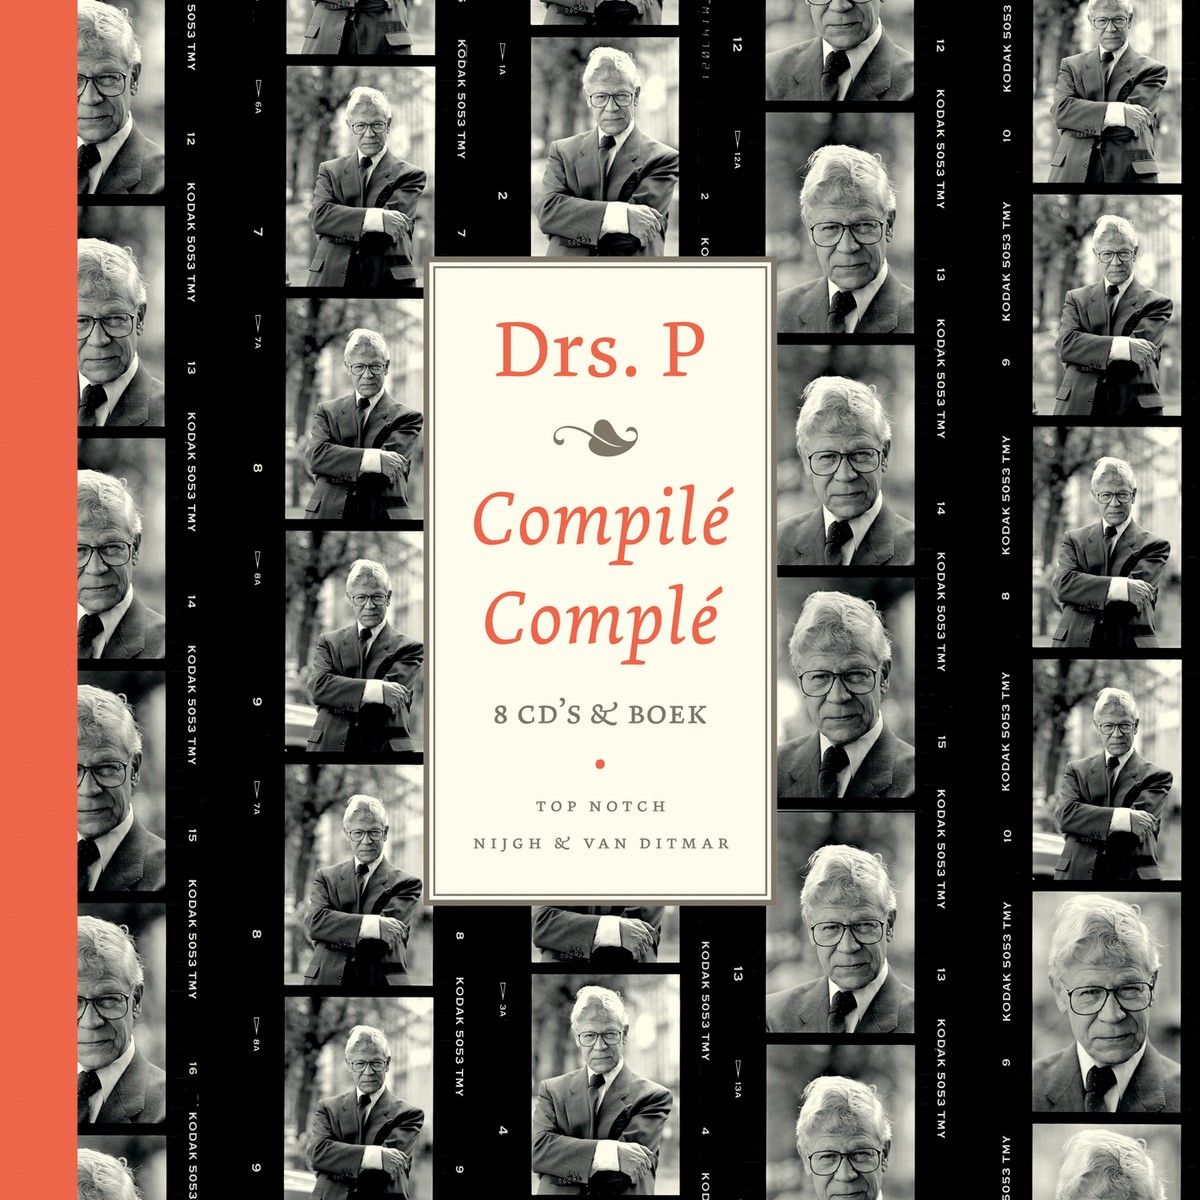 Drs. P - Compilé Complé (2012)